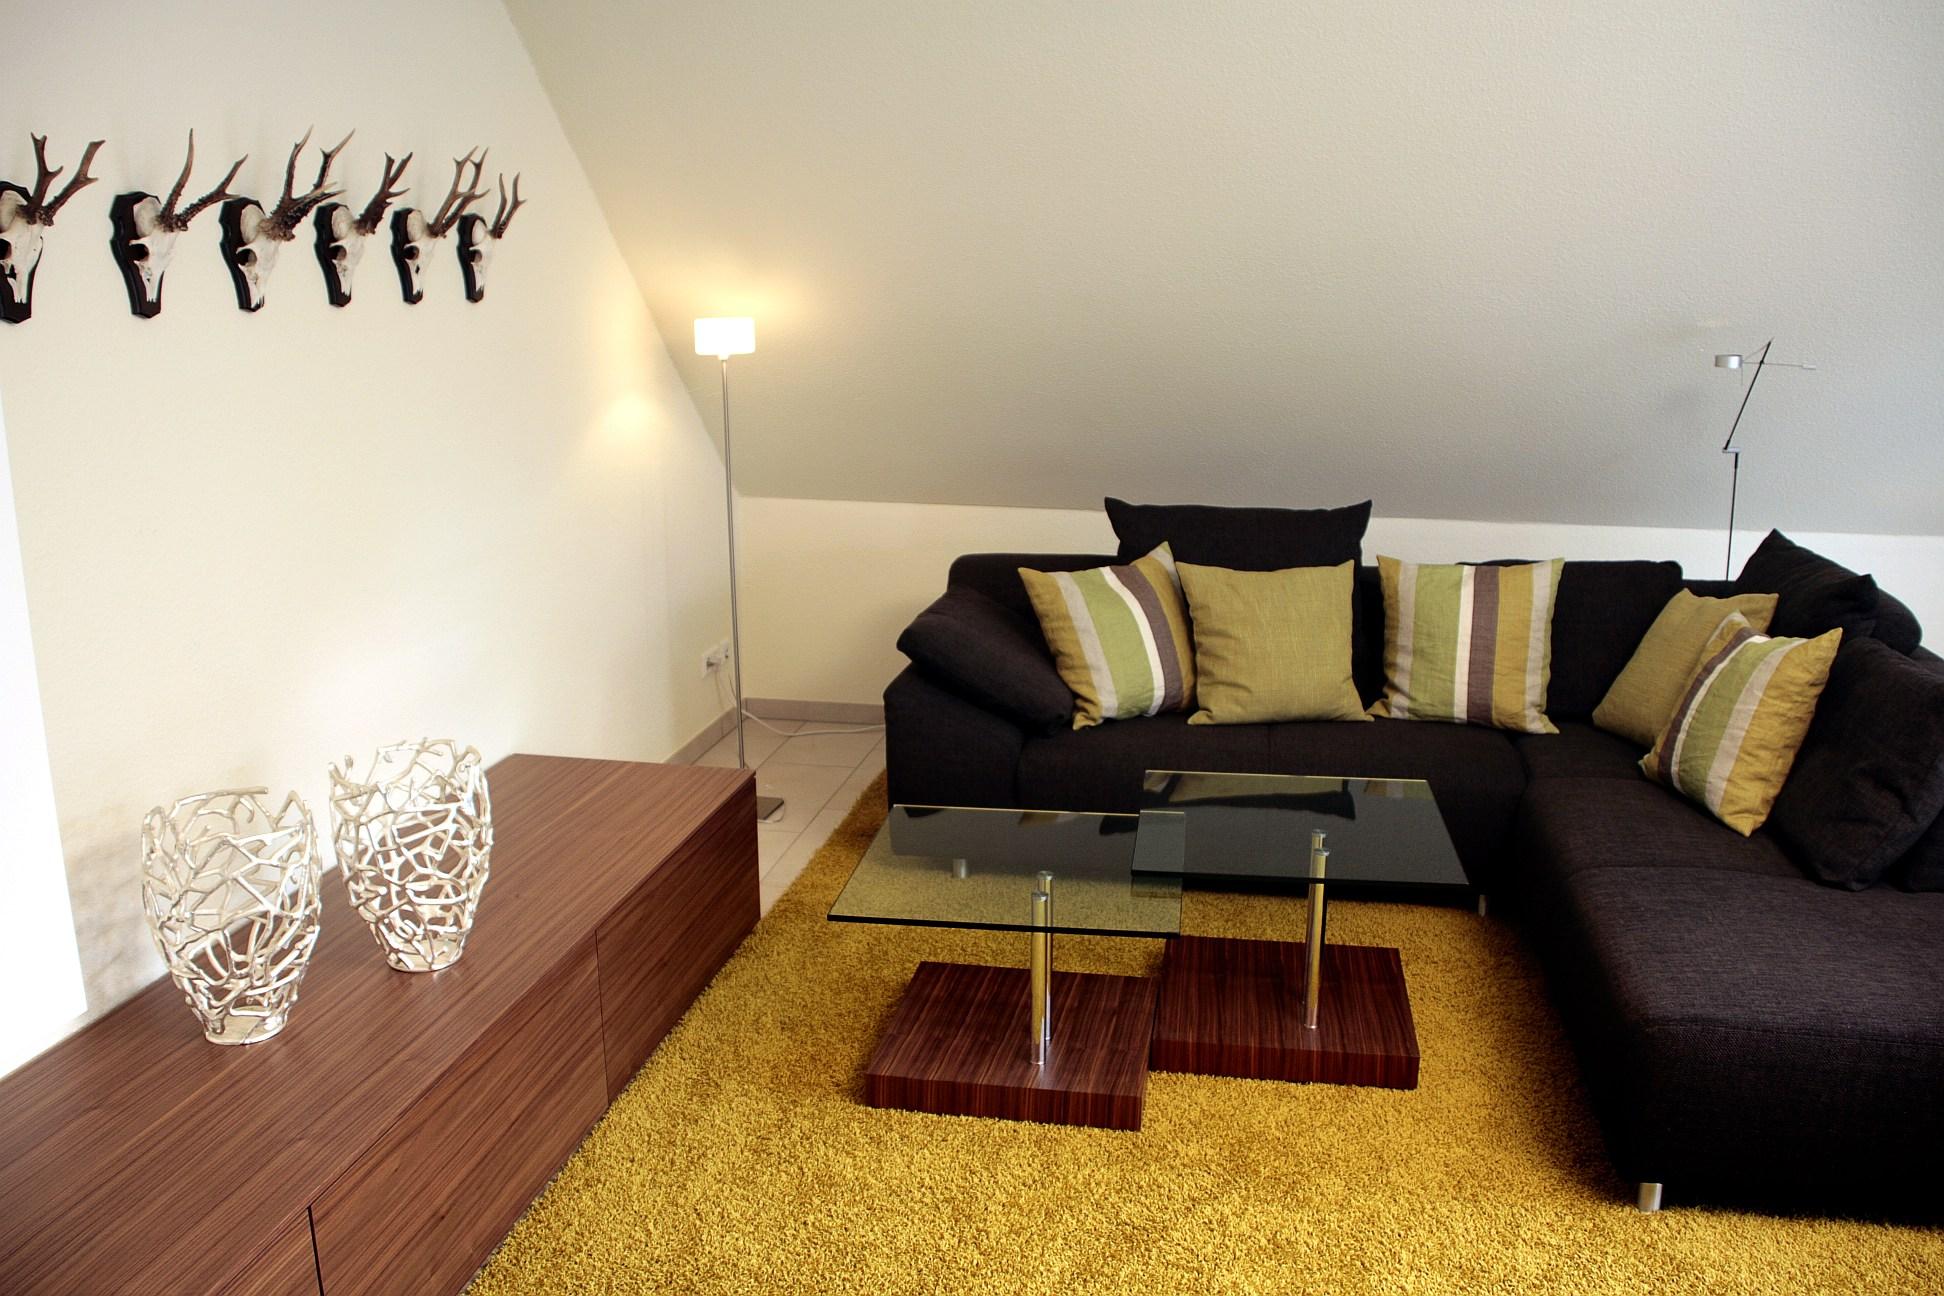 Sitzecke mit grünen Farbakzenten #couchtisch #dachgeschoss #wohnzimmer #sofa ©Feinarbeit Wohnberatung/Th.Finster